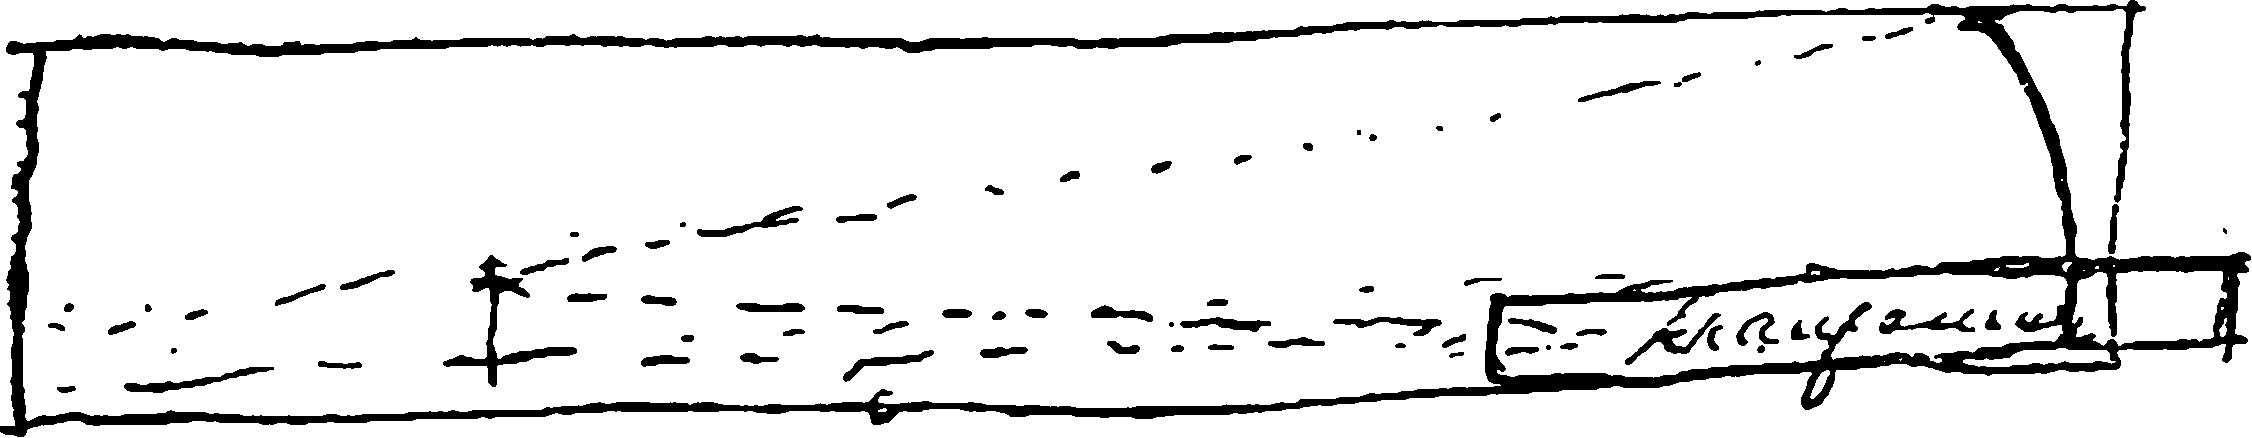 Рис. 21. Чертеж М.В. Ломоносова схемы его отражательного телескопа с наклонным зеркалом